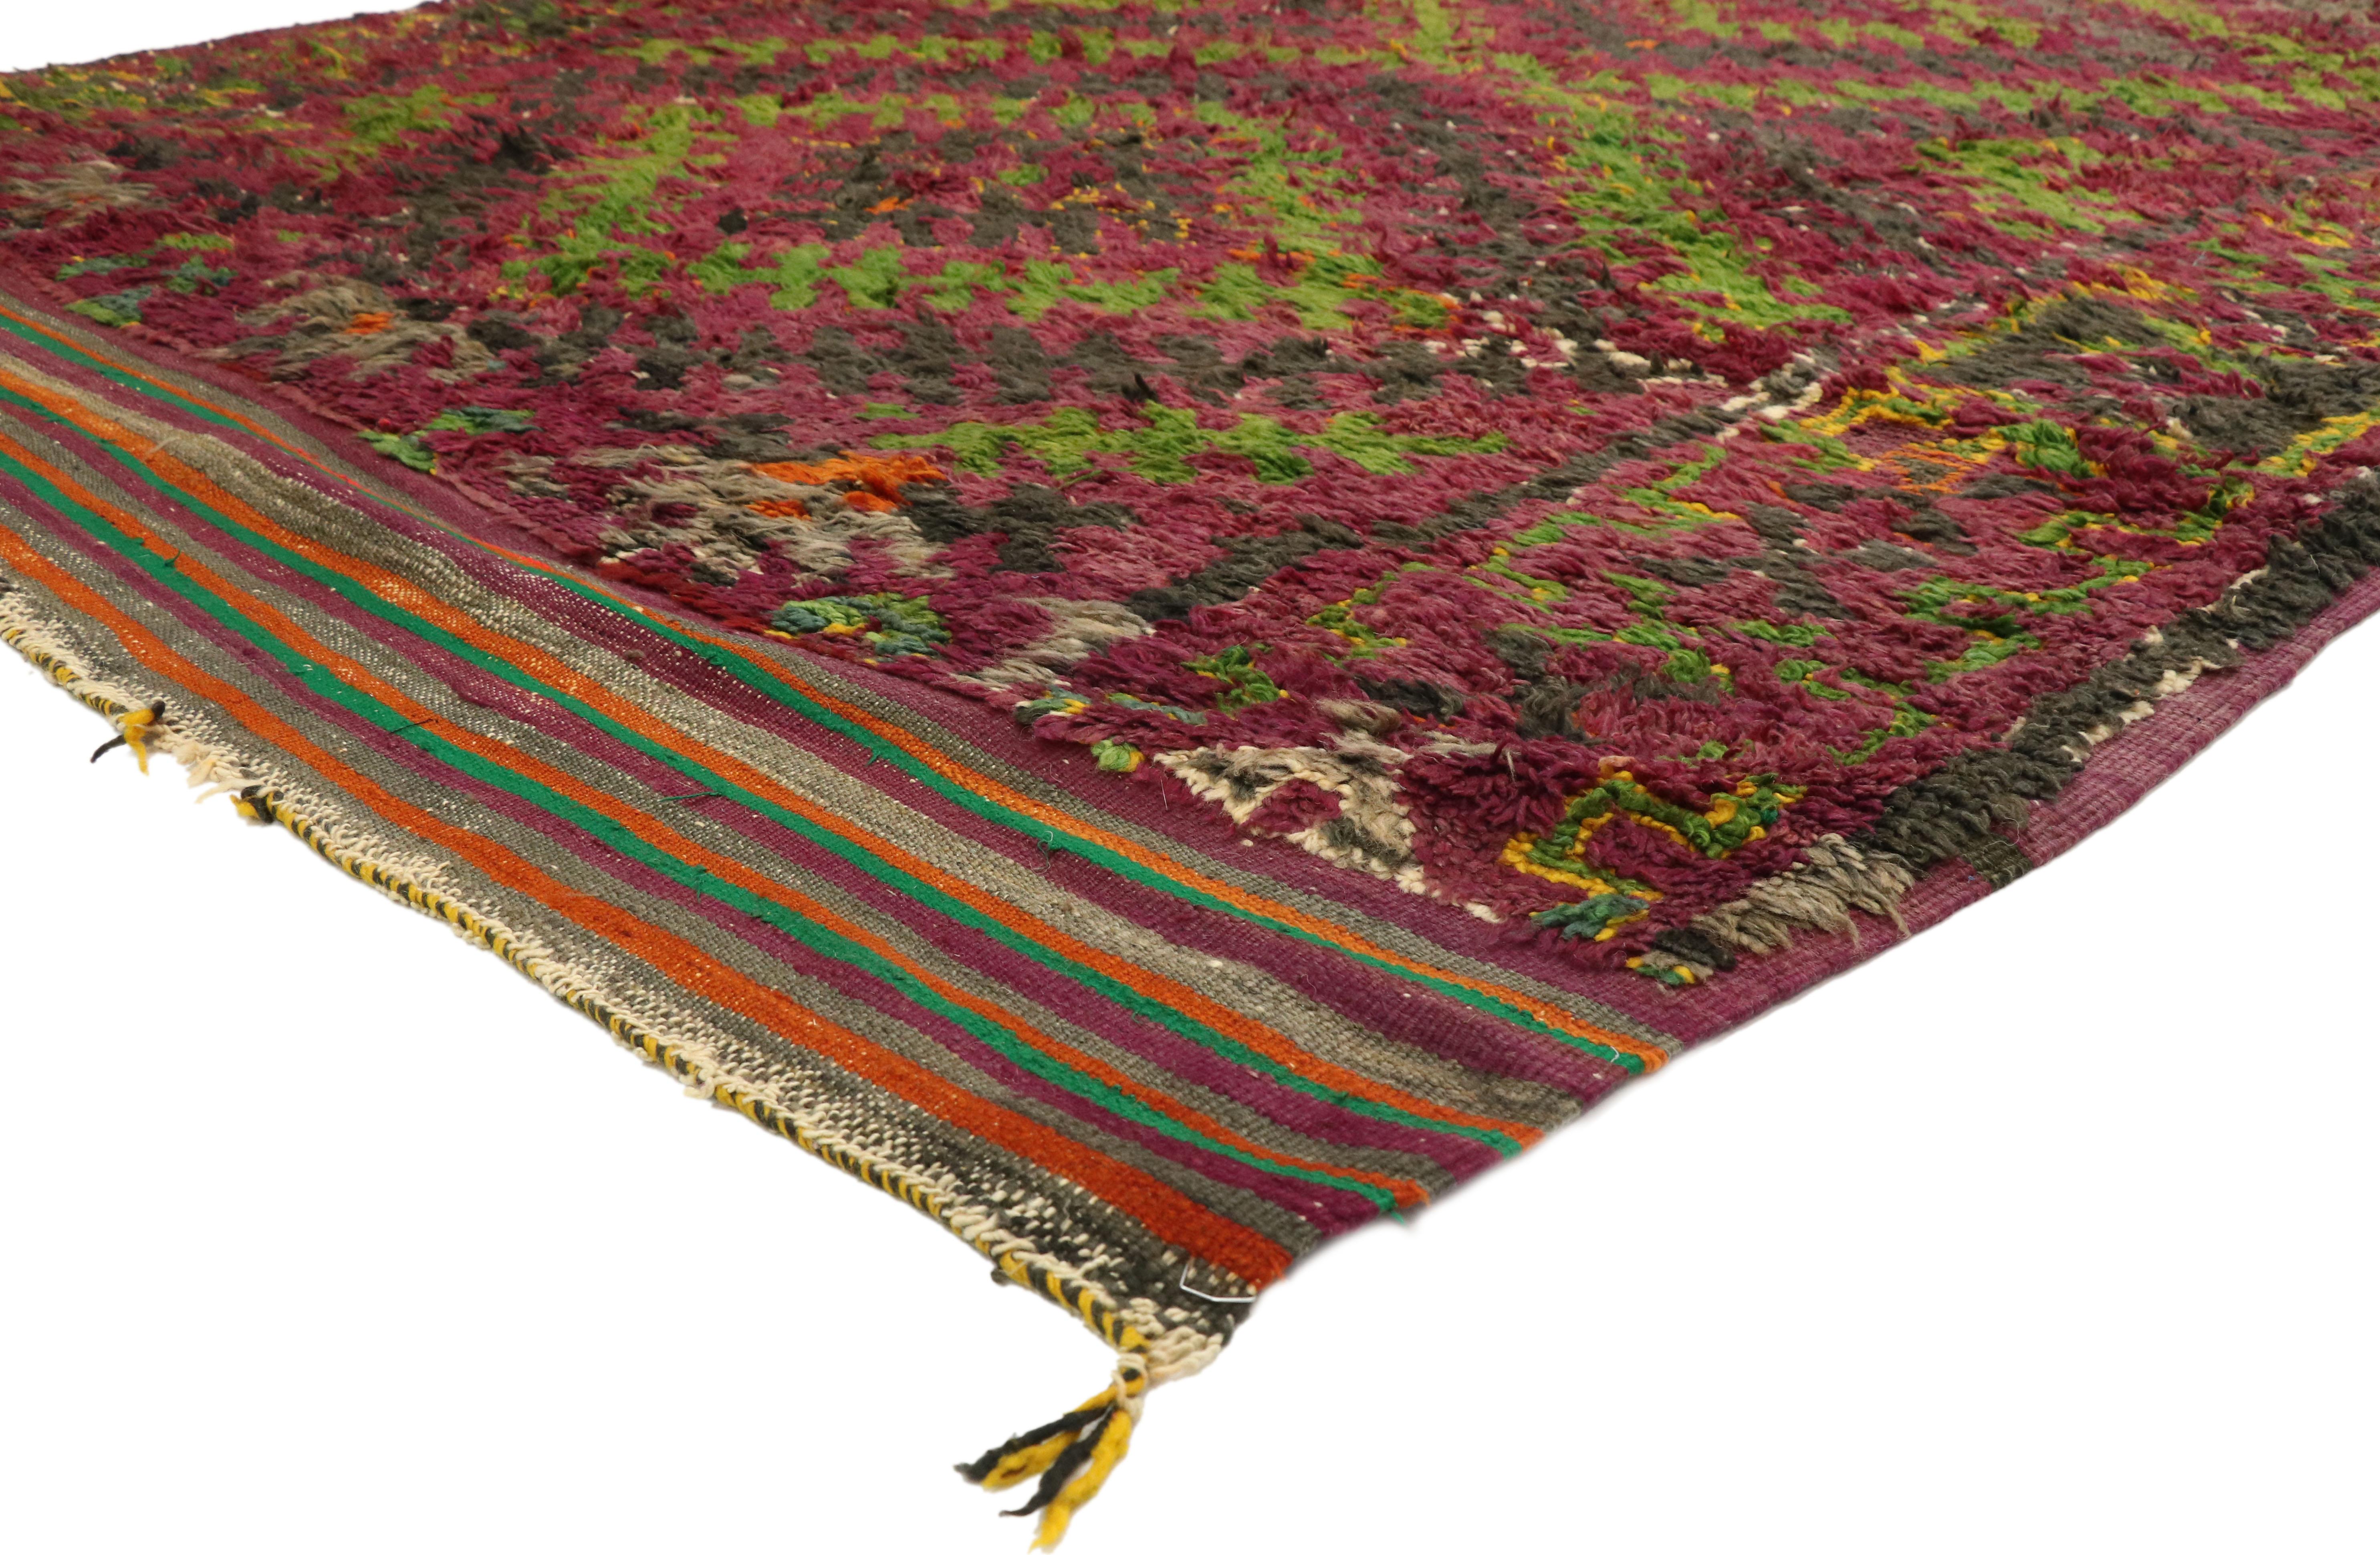 20971, Vintage Beni M'Guild Marokkanischer Teppich mit Retro Postmodernem Stil. Dieser handgeknüpfte marokkanische Teppich aus Wolle im Vintage-Stil von Beni M'Guild zeigt eine Reihe erweiterter Rauten, die aus dem alten Leiterkamm-Motiv der